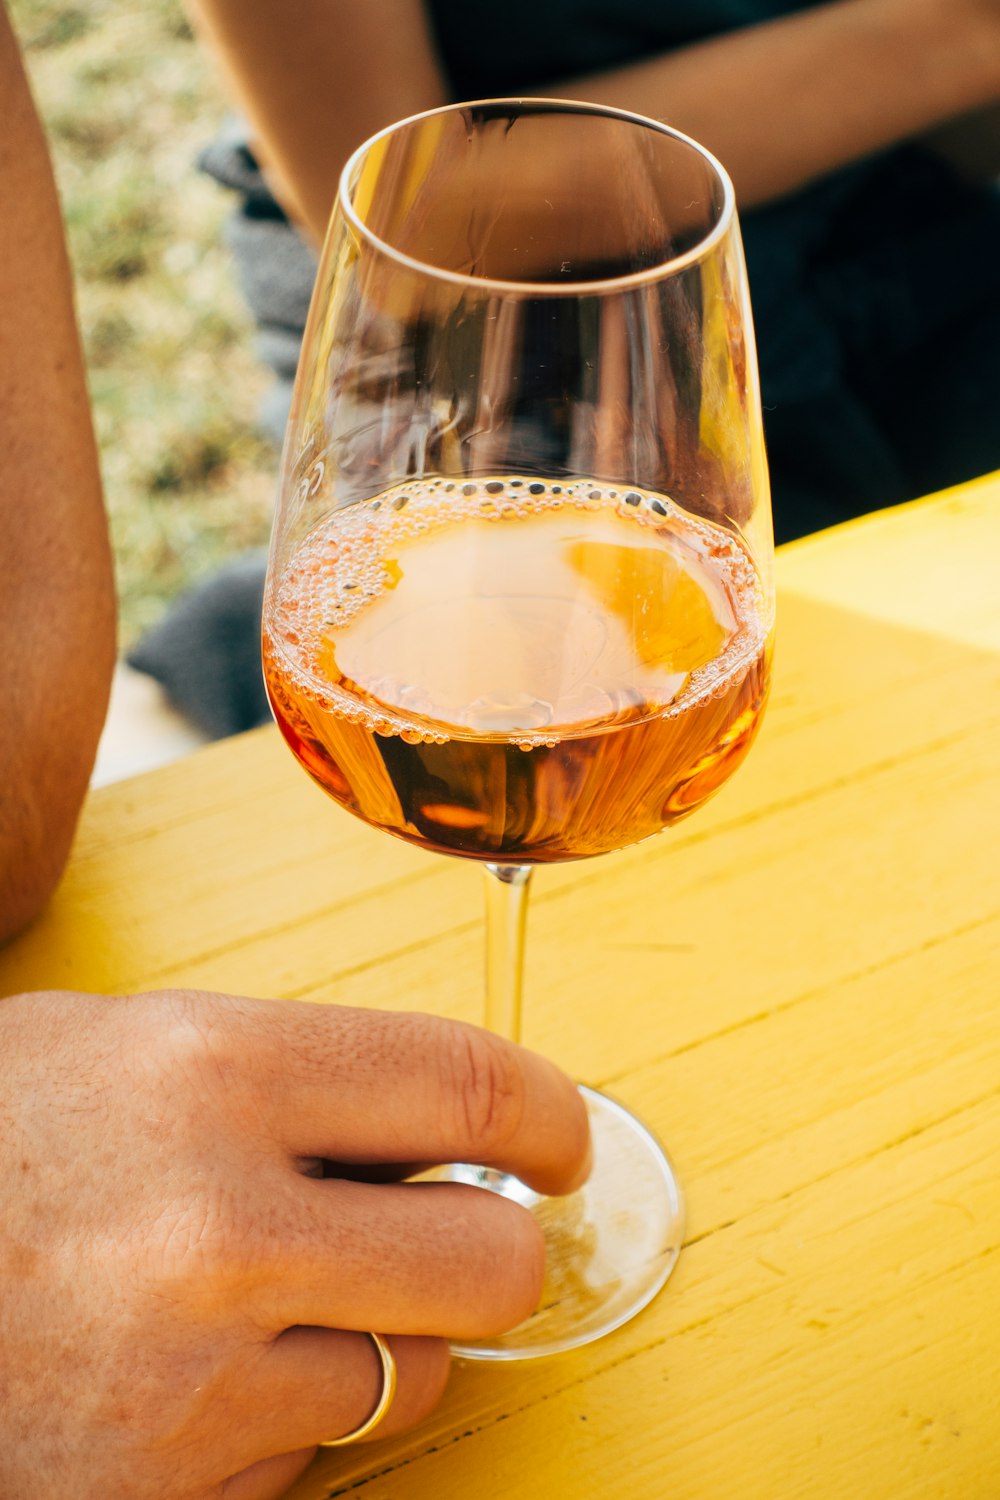 갈색 액체가 든 투명한 와인 잔을 들고 있는 사람